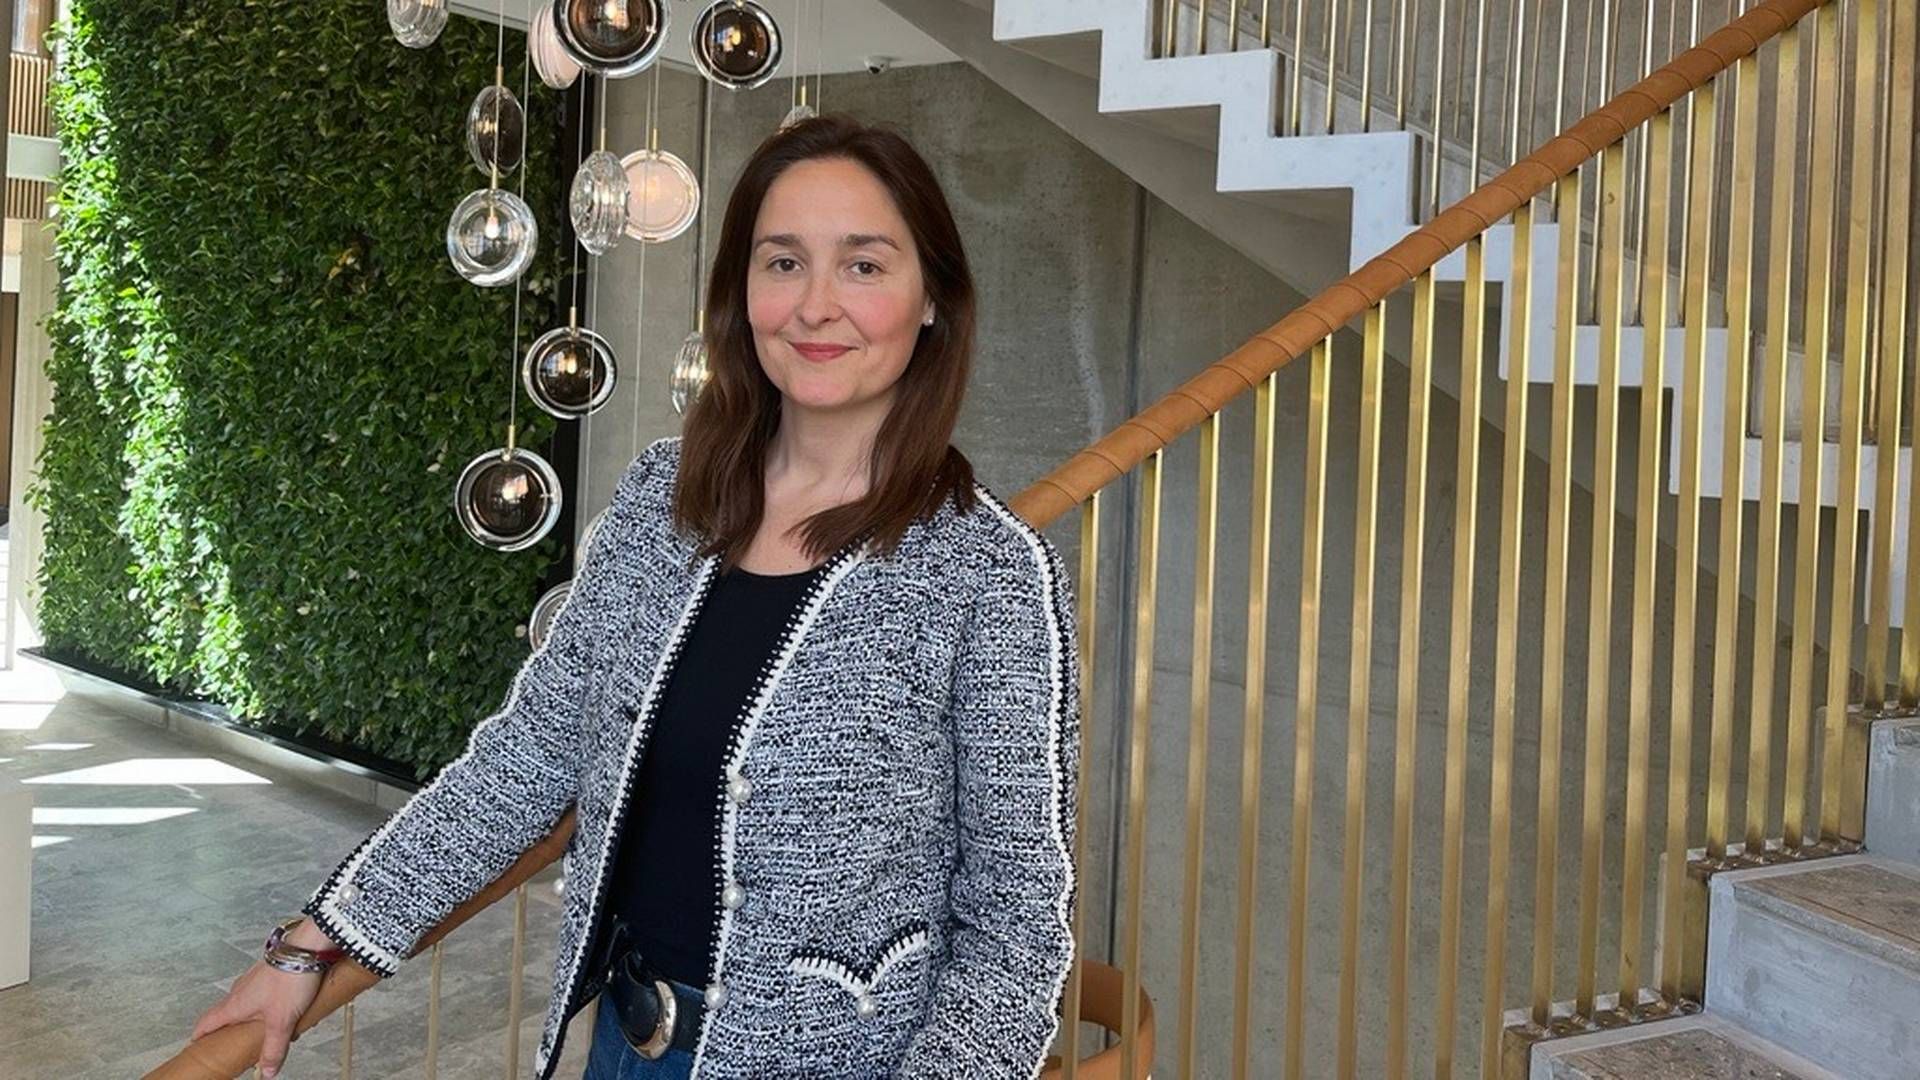 Natalia Rogaczewska har de seneste år rådgivet virksomheder om strategisk håndtering af barsel i forhold til øget konkurrenceevne, kønsligestilling og inklusion. Nu er hun trådt ind på Accuras nye kontor i Nordhavn i København. | Foto: Accura / Pr